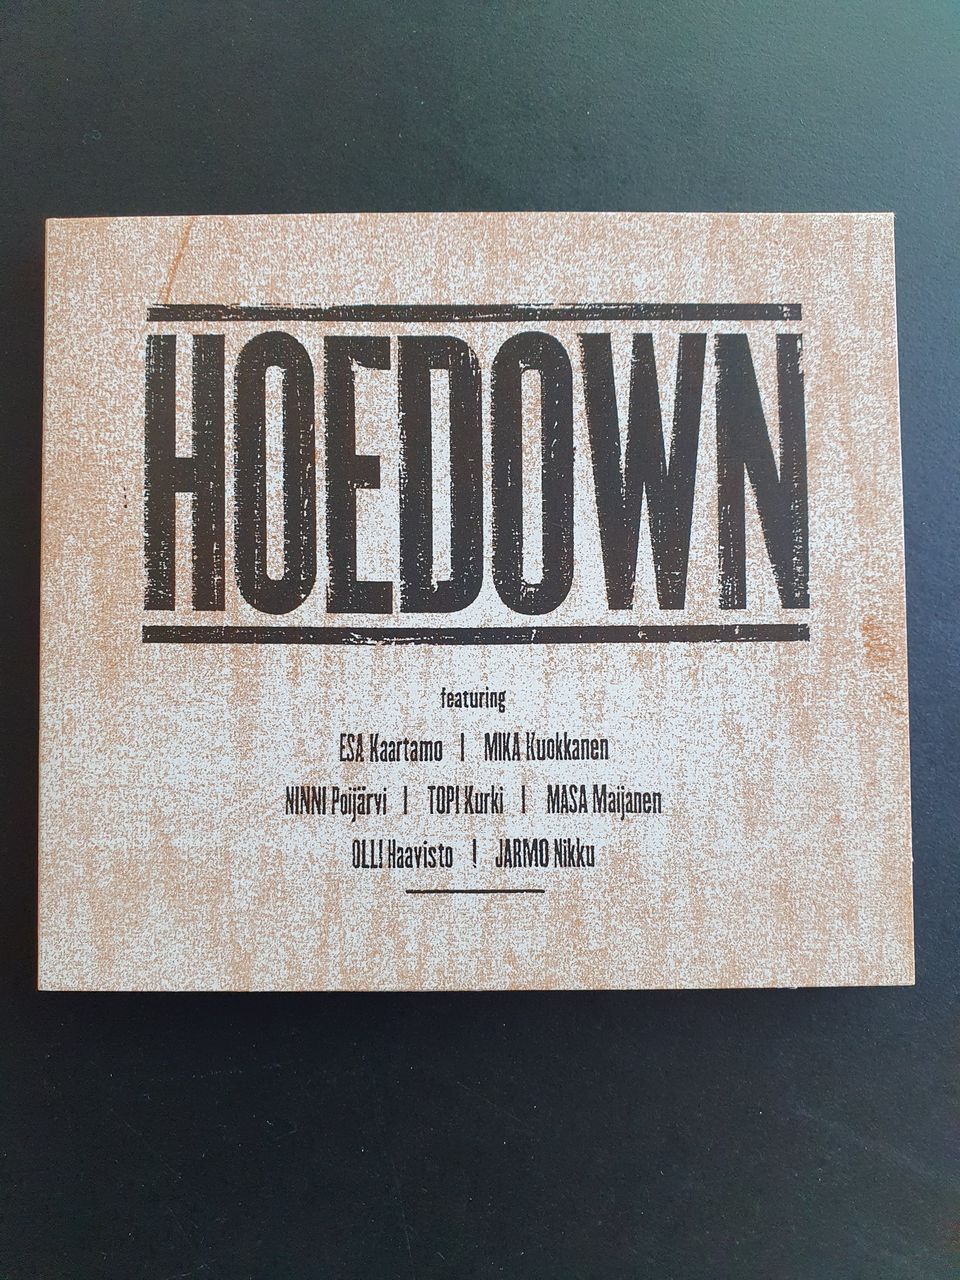 Hoedown CD